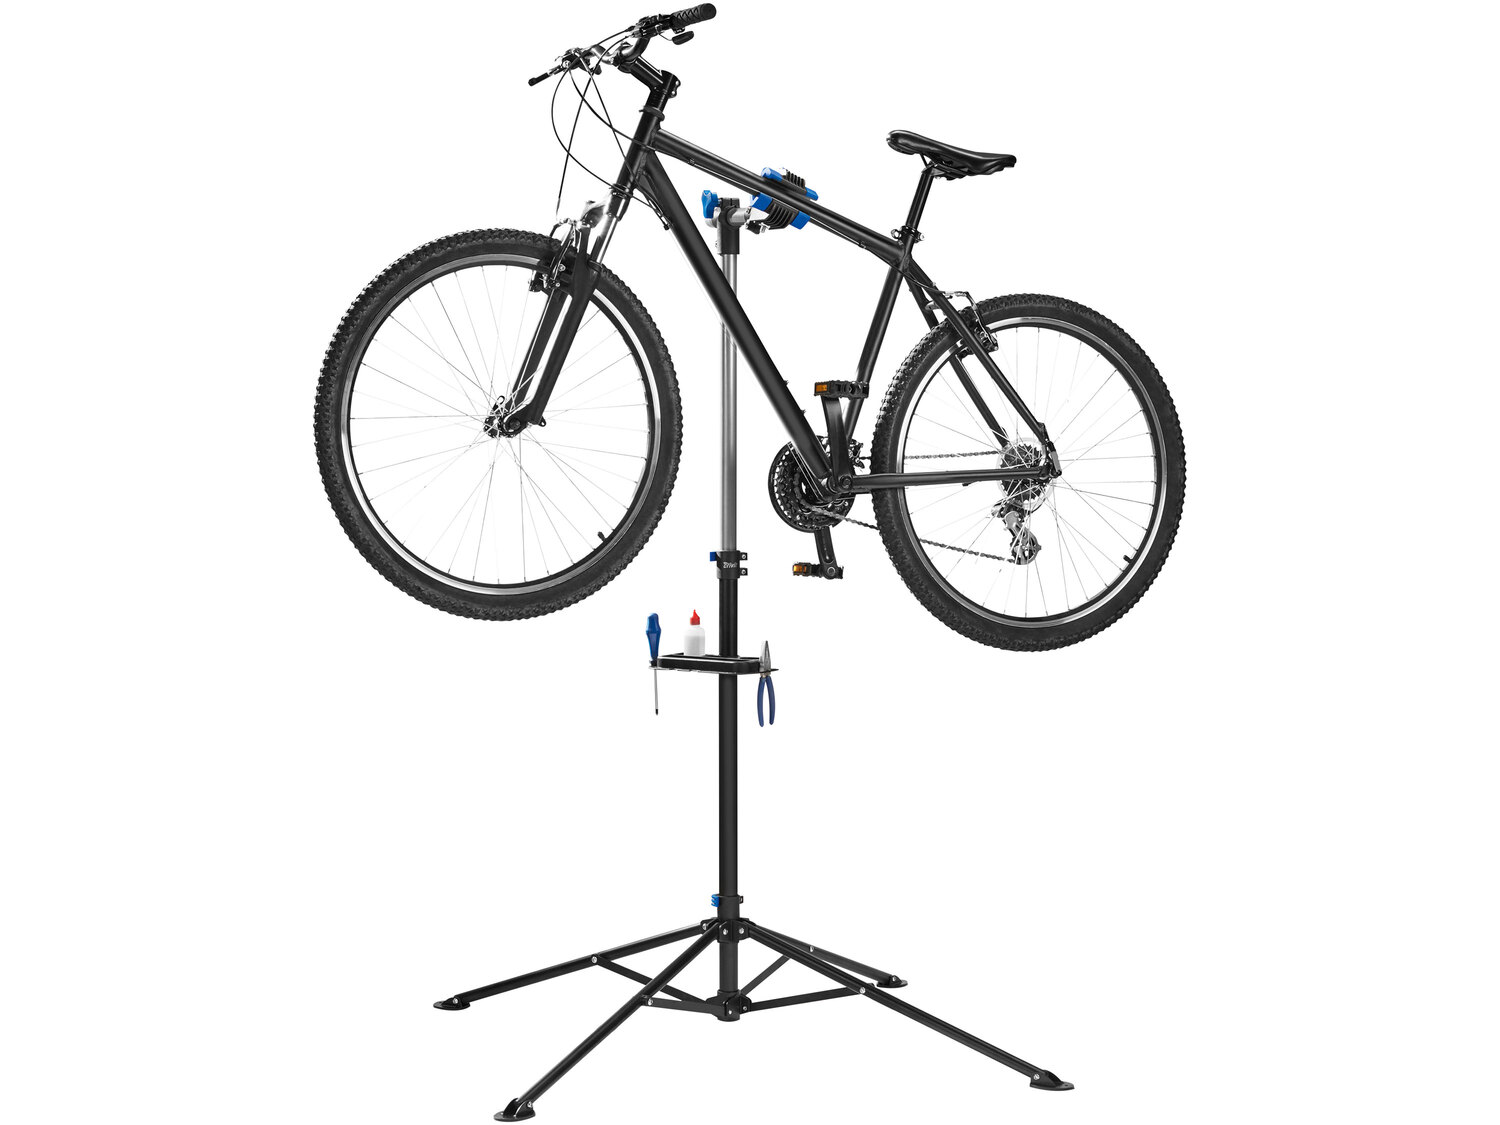 Stojak montażowy do roweru Crivit, cena 149,00 PLN 
- rozłożony: ok. 198 x 104 ...